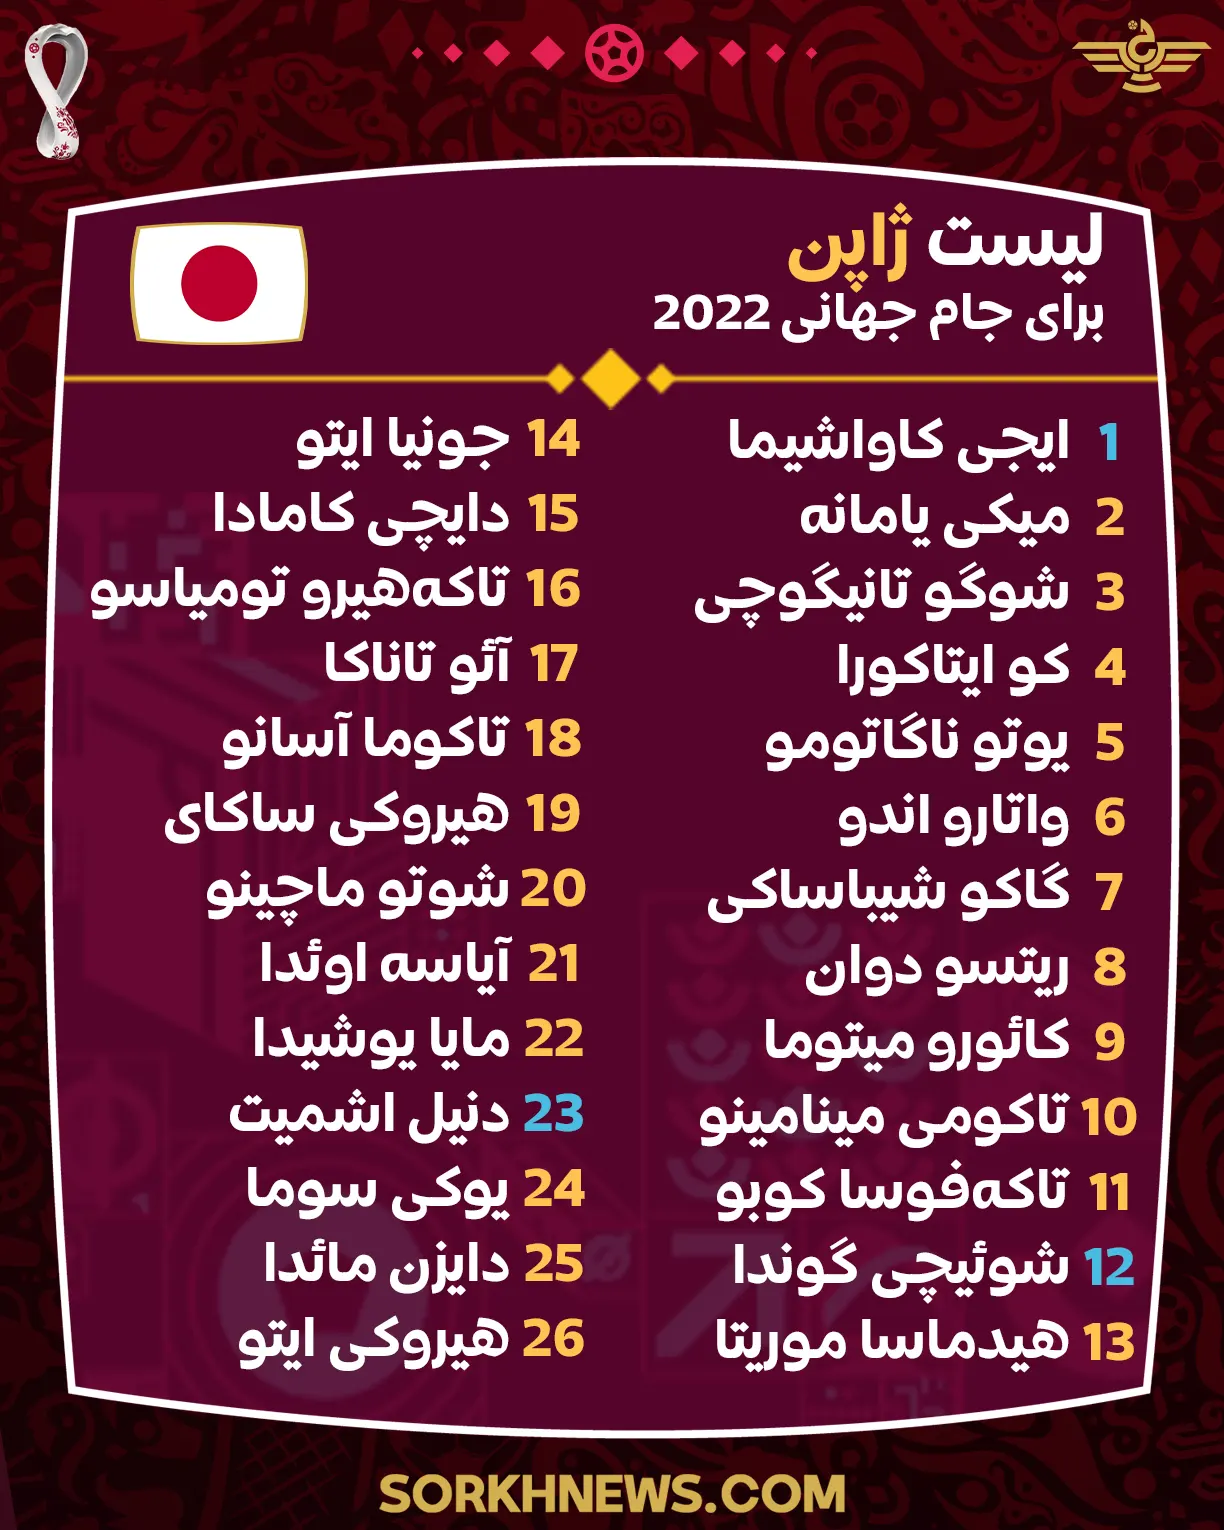 لیست نهایی تیم ملی ژاپن برای جام جهانی 2022